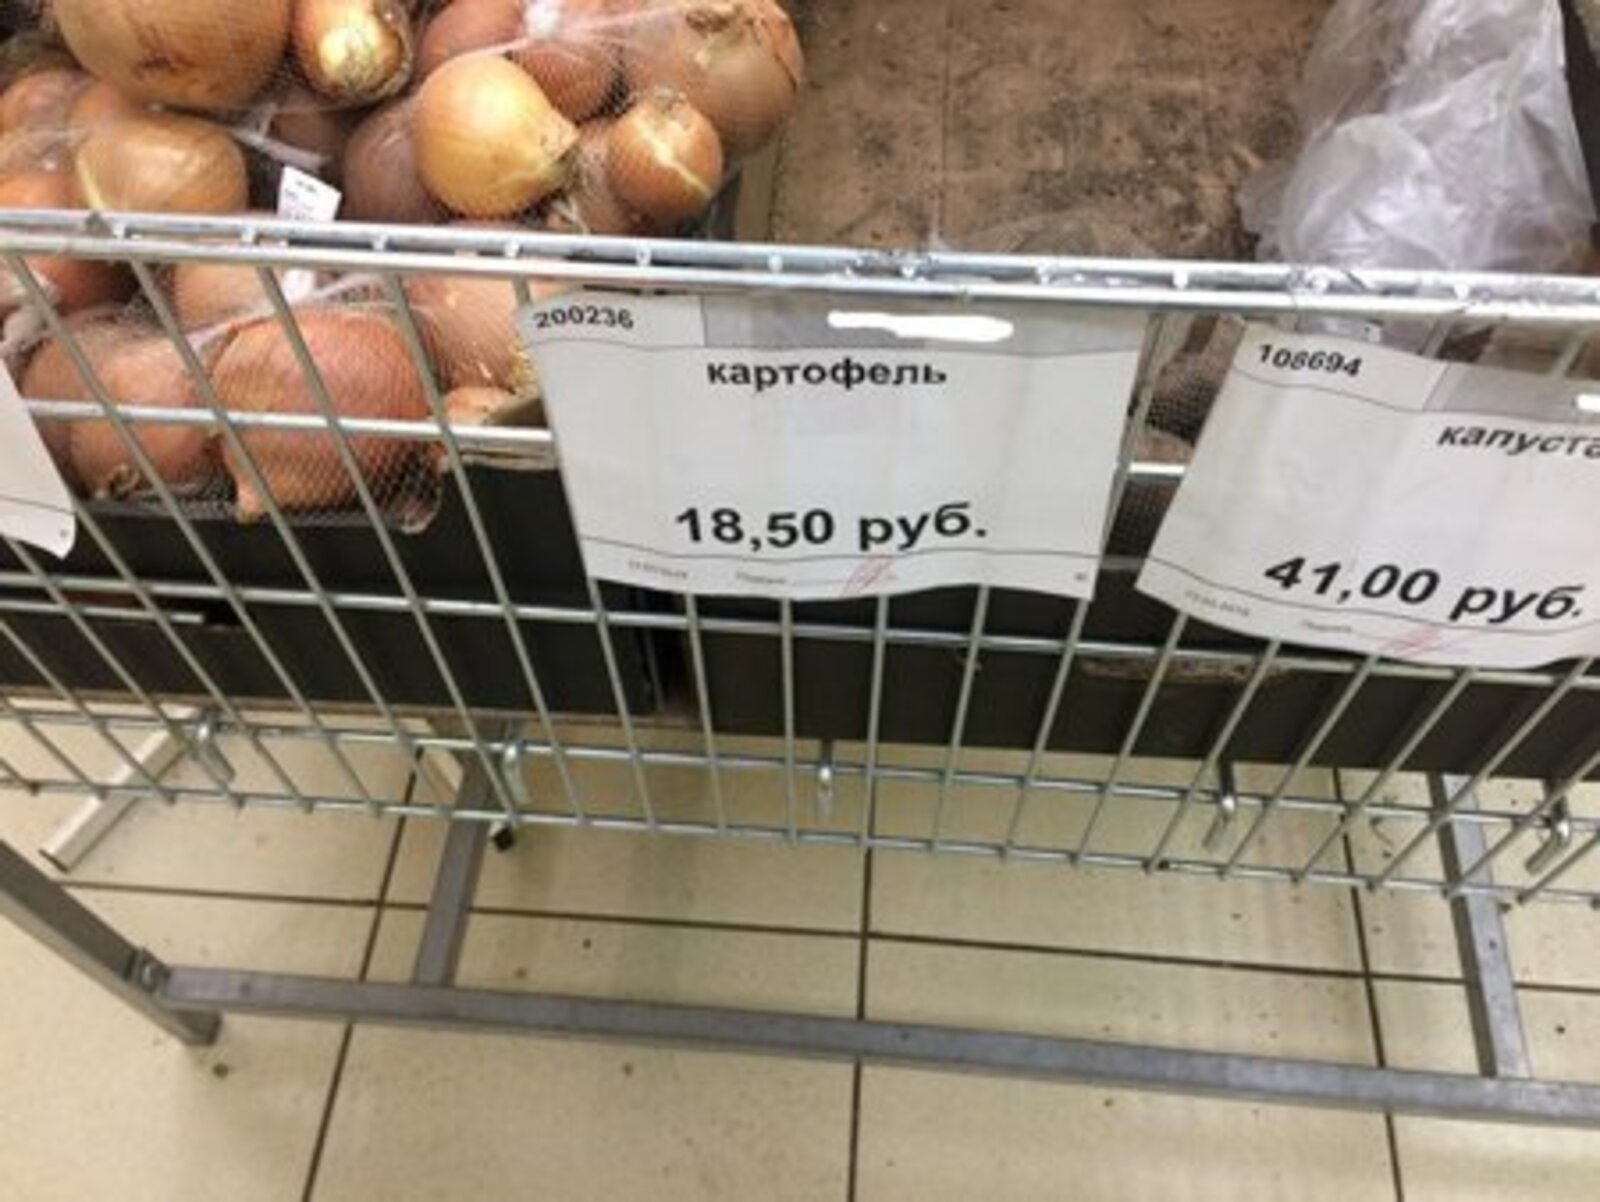 Картофель в магазине местного предпринимателя стоит 18 рублей 50 копеек, в то время как в супермаркете – 23 рубля 99 копеек.